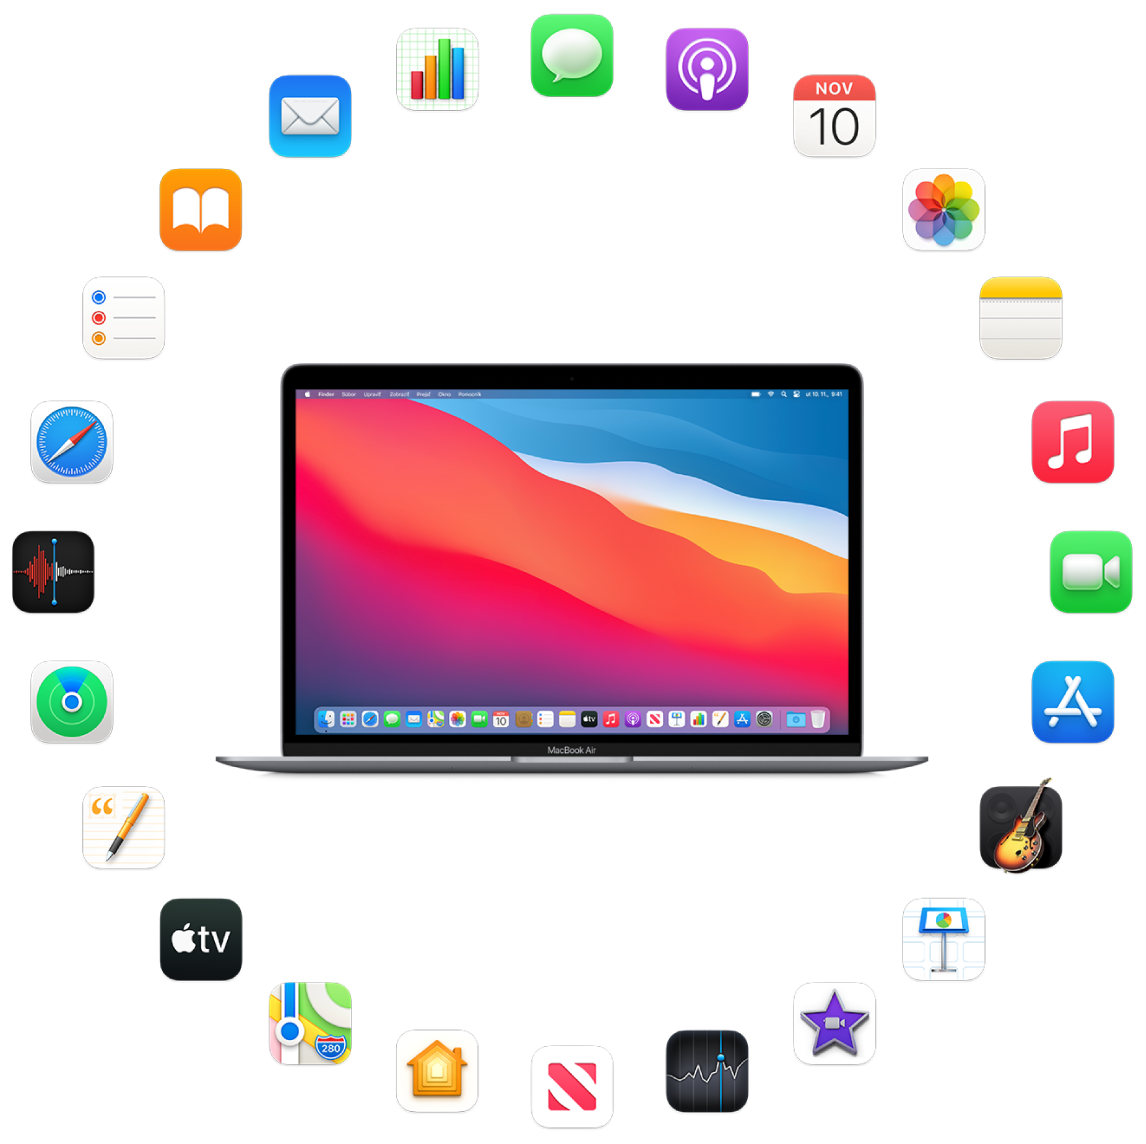 MacBook Air obklopený ikonami vstavaných aplikácií, ktoré sú popísané v nasledujúcich častiach.